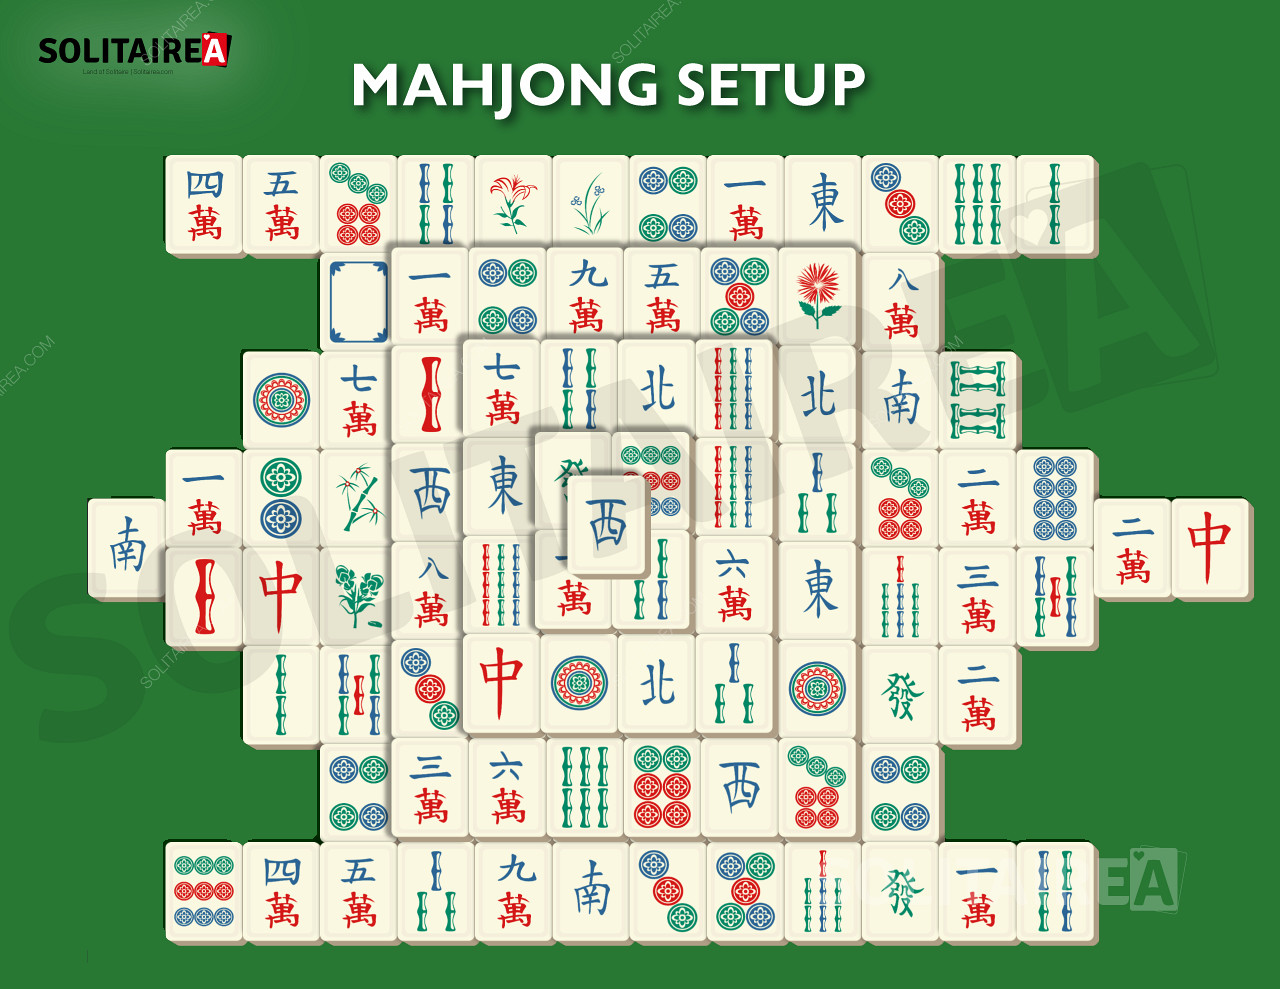 A képen látható, hogyan néz ki a Mahjong Solitaire beállítása.